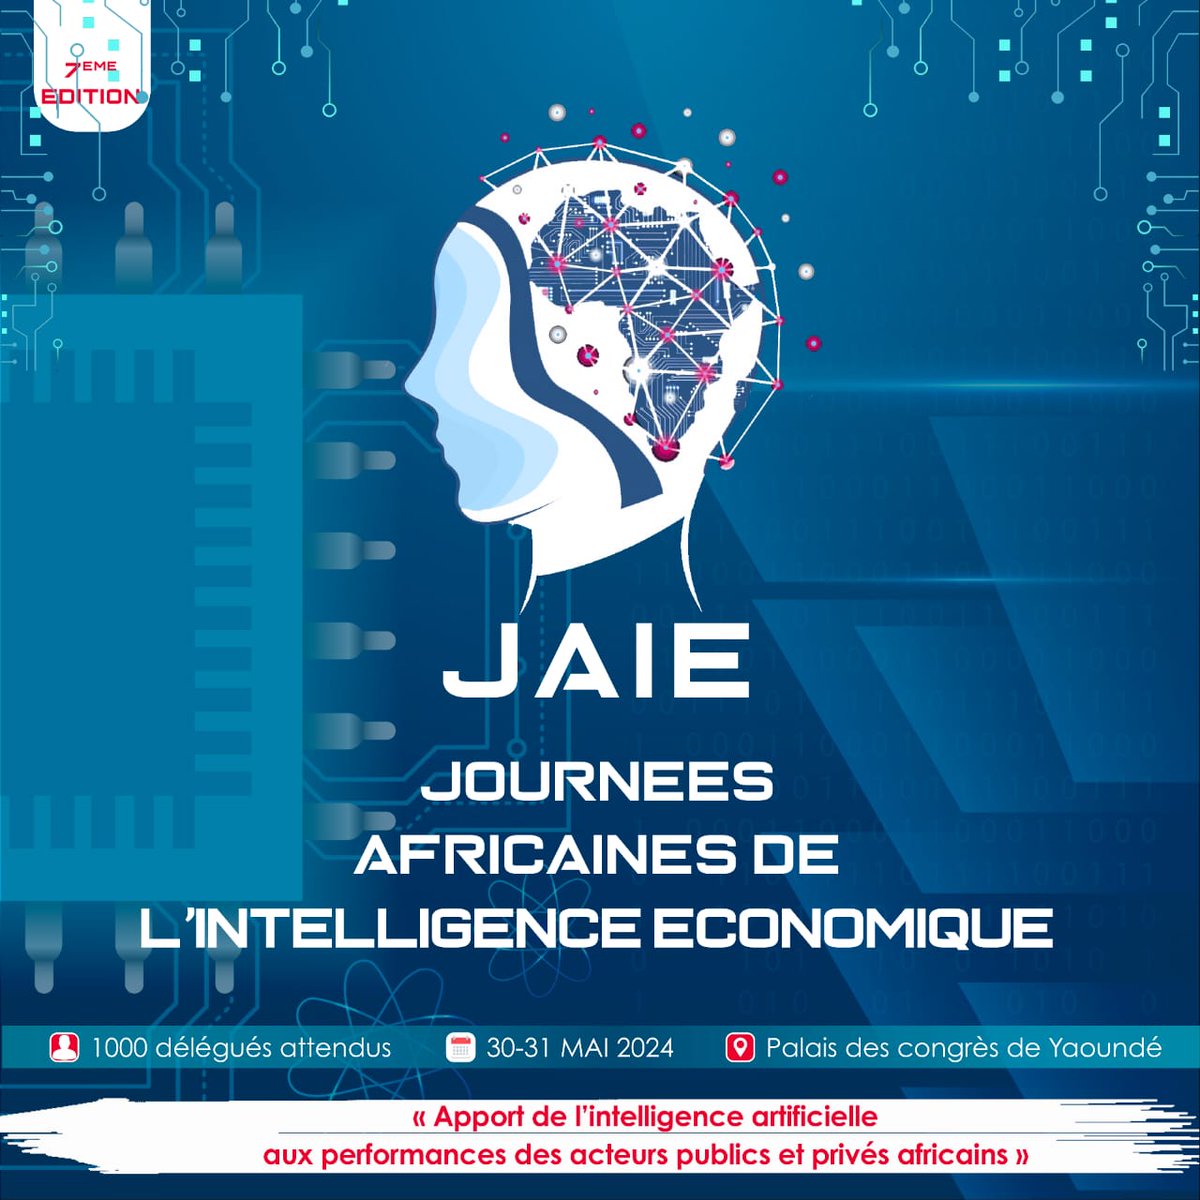 Si, en qualité de sponsor ou de simple participant, vous souhaitez être de la 7ème édition des #JAIE2024 , contactez-nous sans délai.  Informations et inscriptions sur le site de l'événement :  les-jaie.info.

#MarchéAfricain #IntelligenceEconomique #DueDiligence #CAVIE